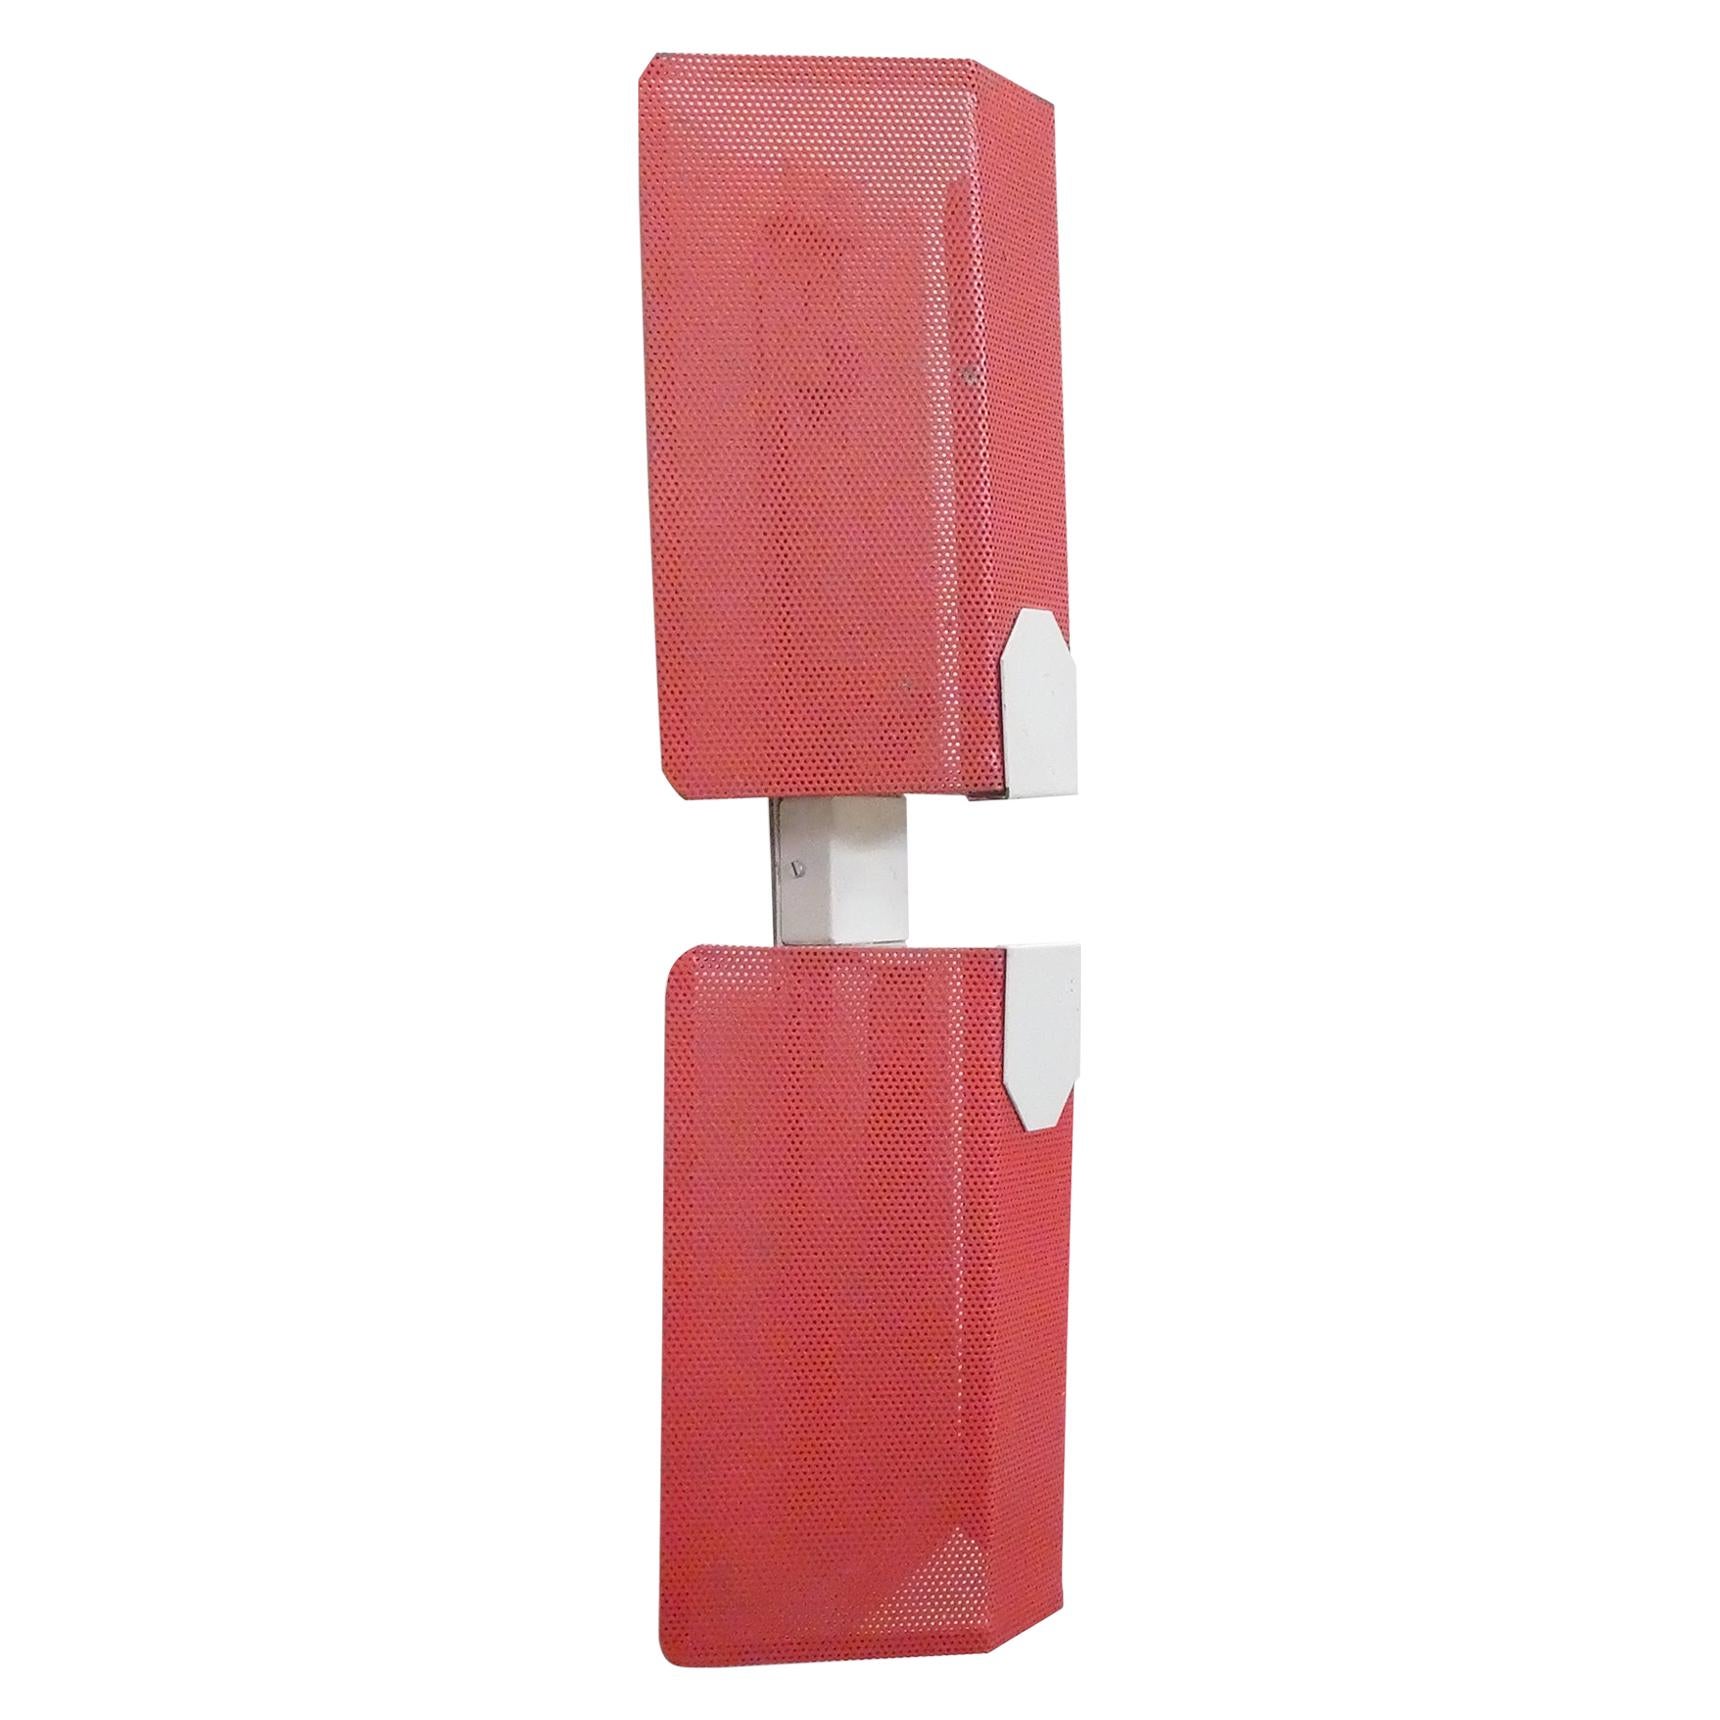 Paire d'appliques en métal rouge perforé de Mathieu Matégot, années 1950.

Deux éléments en tôle rouge perforée sont maintenus en position verticale par une structure géométrique laquée en blanc.

Grâce à son esprit créatif extrêmement actif,